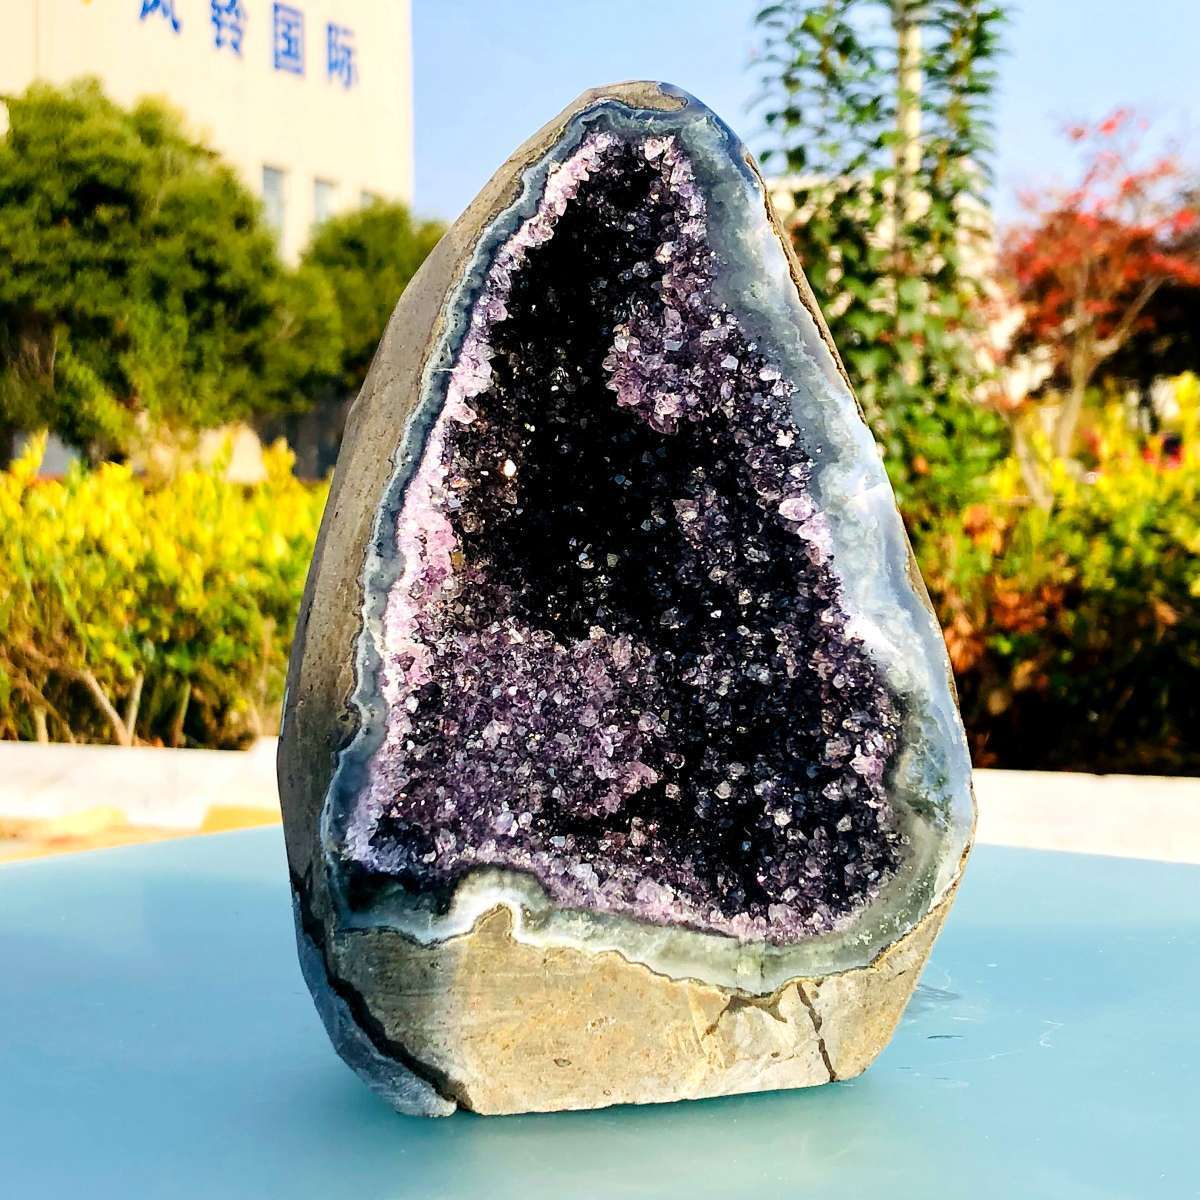 1963g Natural Amethyst Geode Mineral Specimen Crystal Quartz Energy Decoration